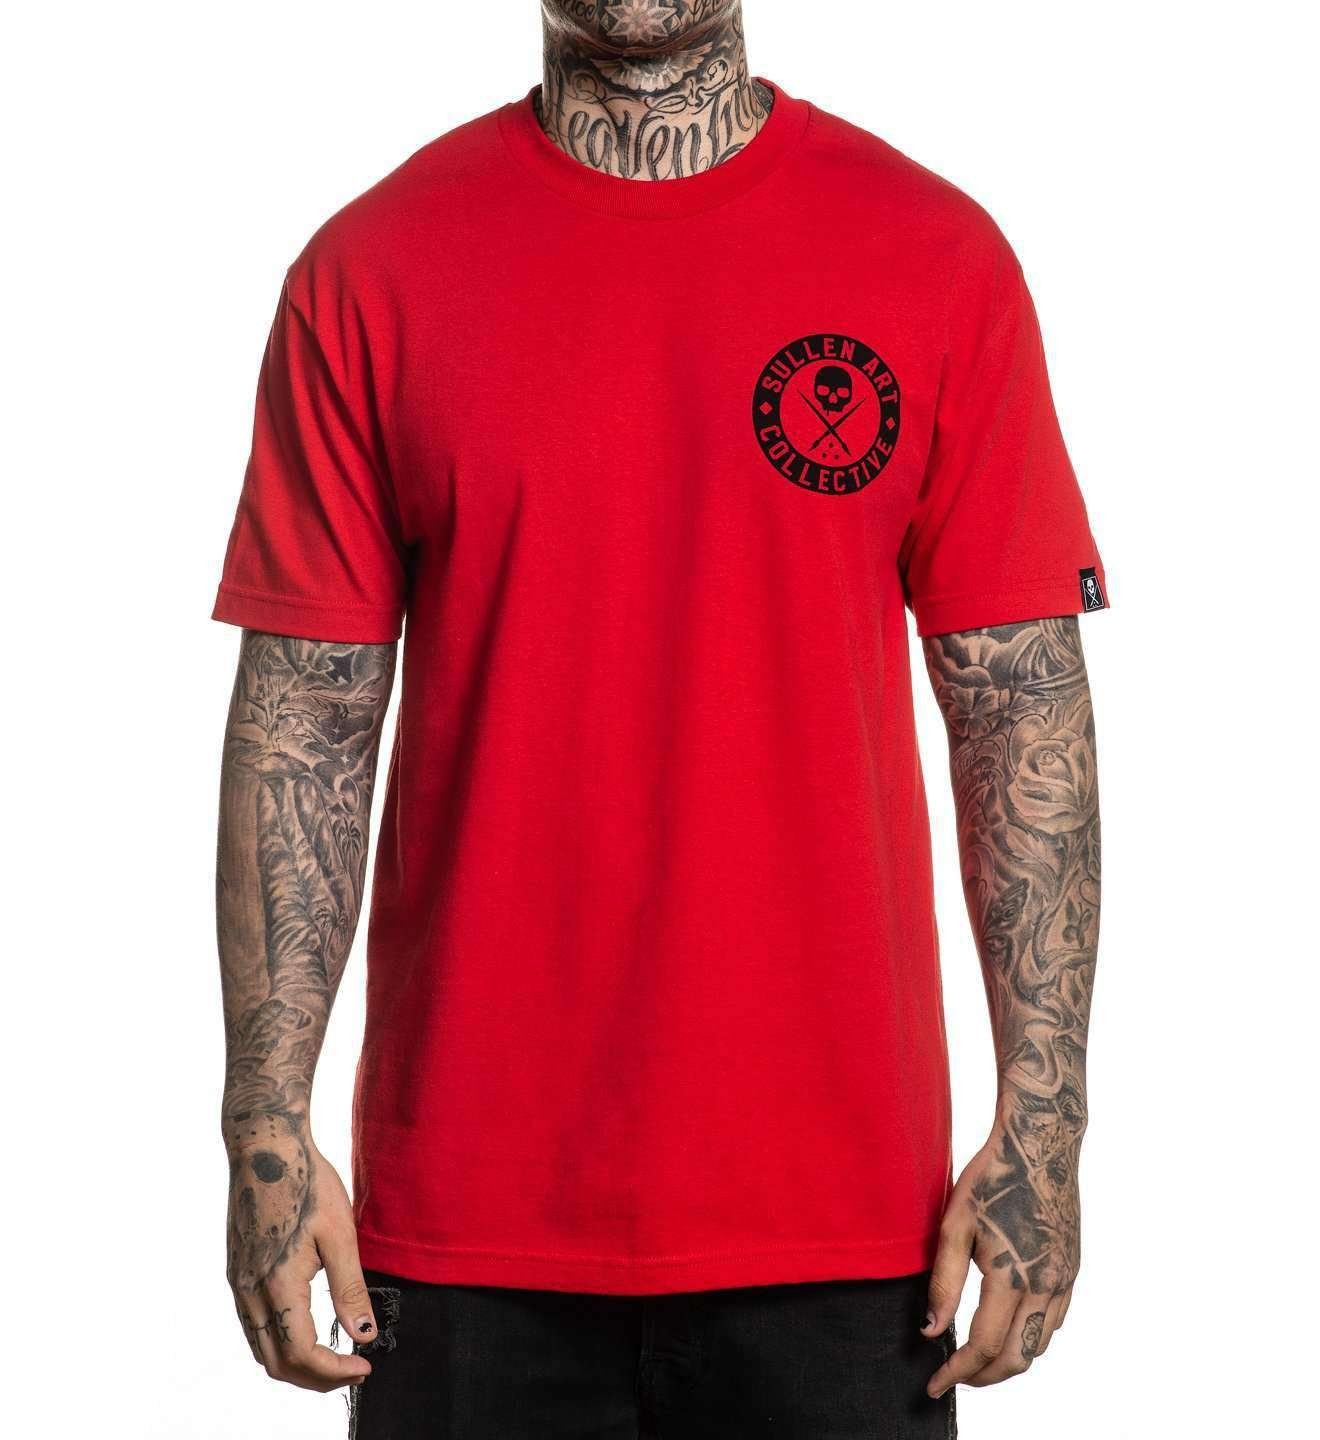 Beliebtester Artikel in unserem Geschäft Sullen Clothing T-Shirt Classic Rot